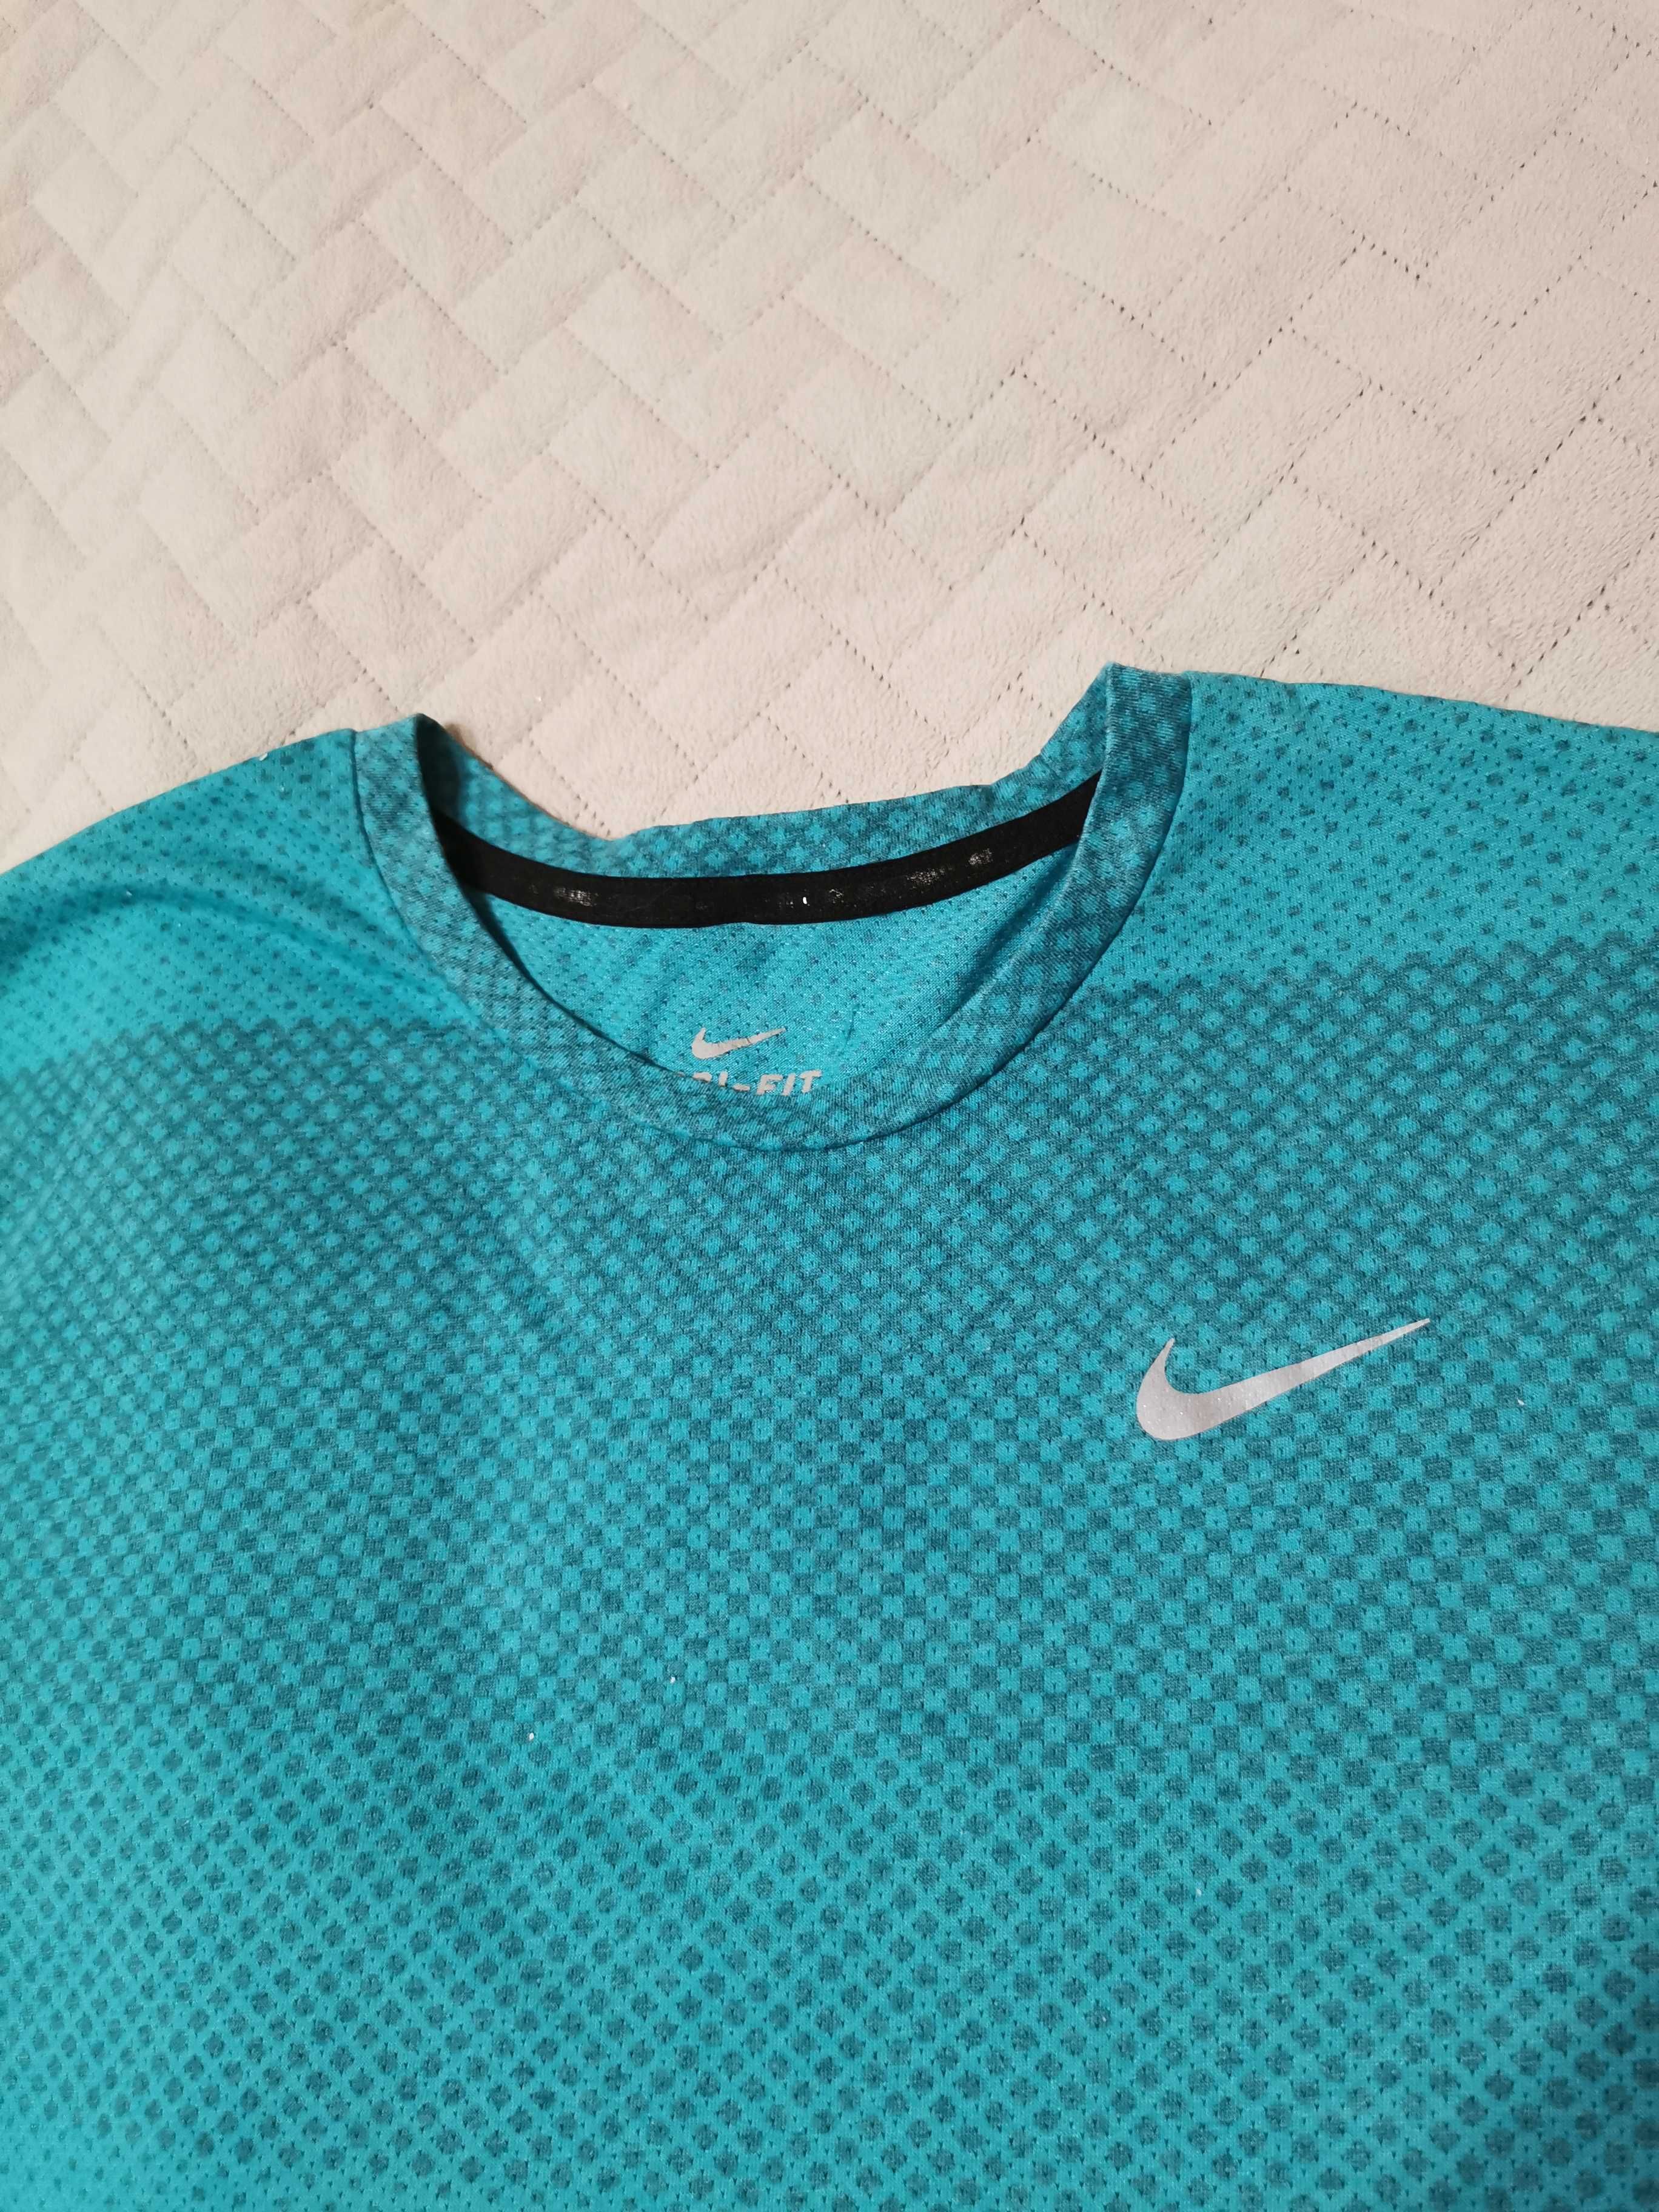 Koszulka sportowa Nike, r. L